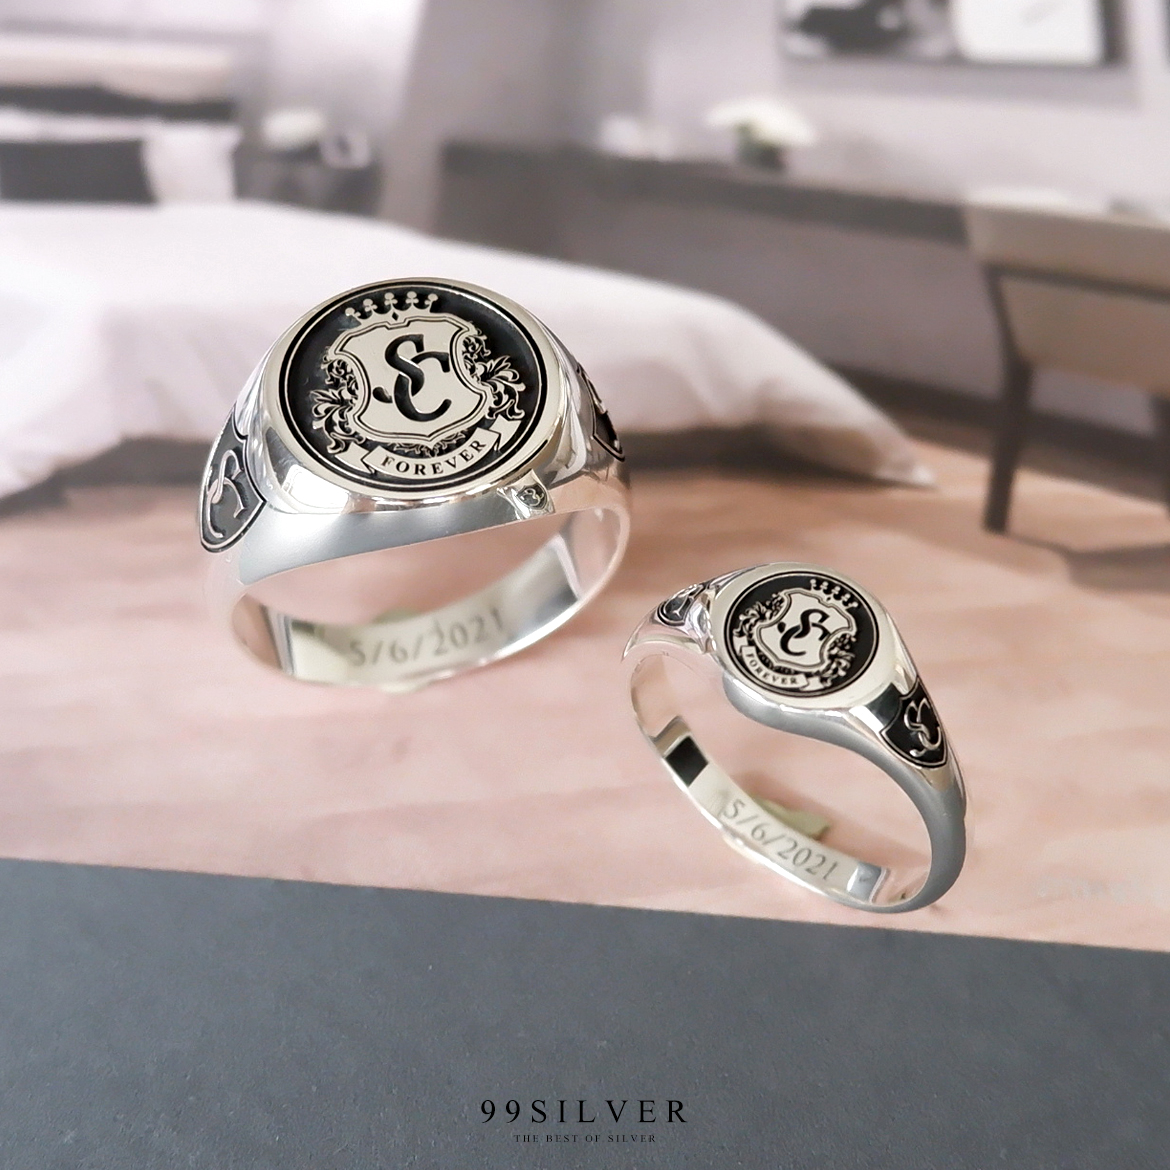 แหวนคู่รักแบบ Signet Ring ออกแบบได้เองตามที่ต้องการ ตัวเรือนหน้ากลม 8 และ 14 มม.